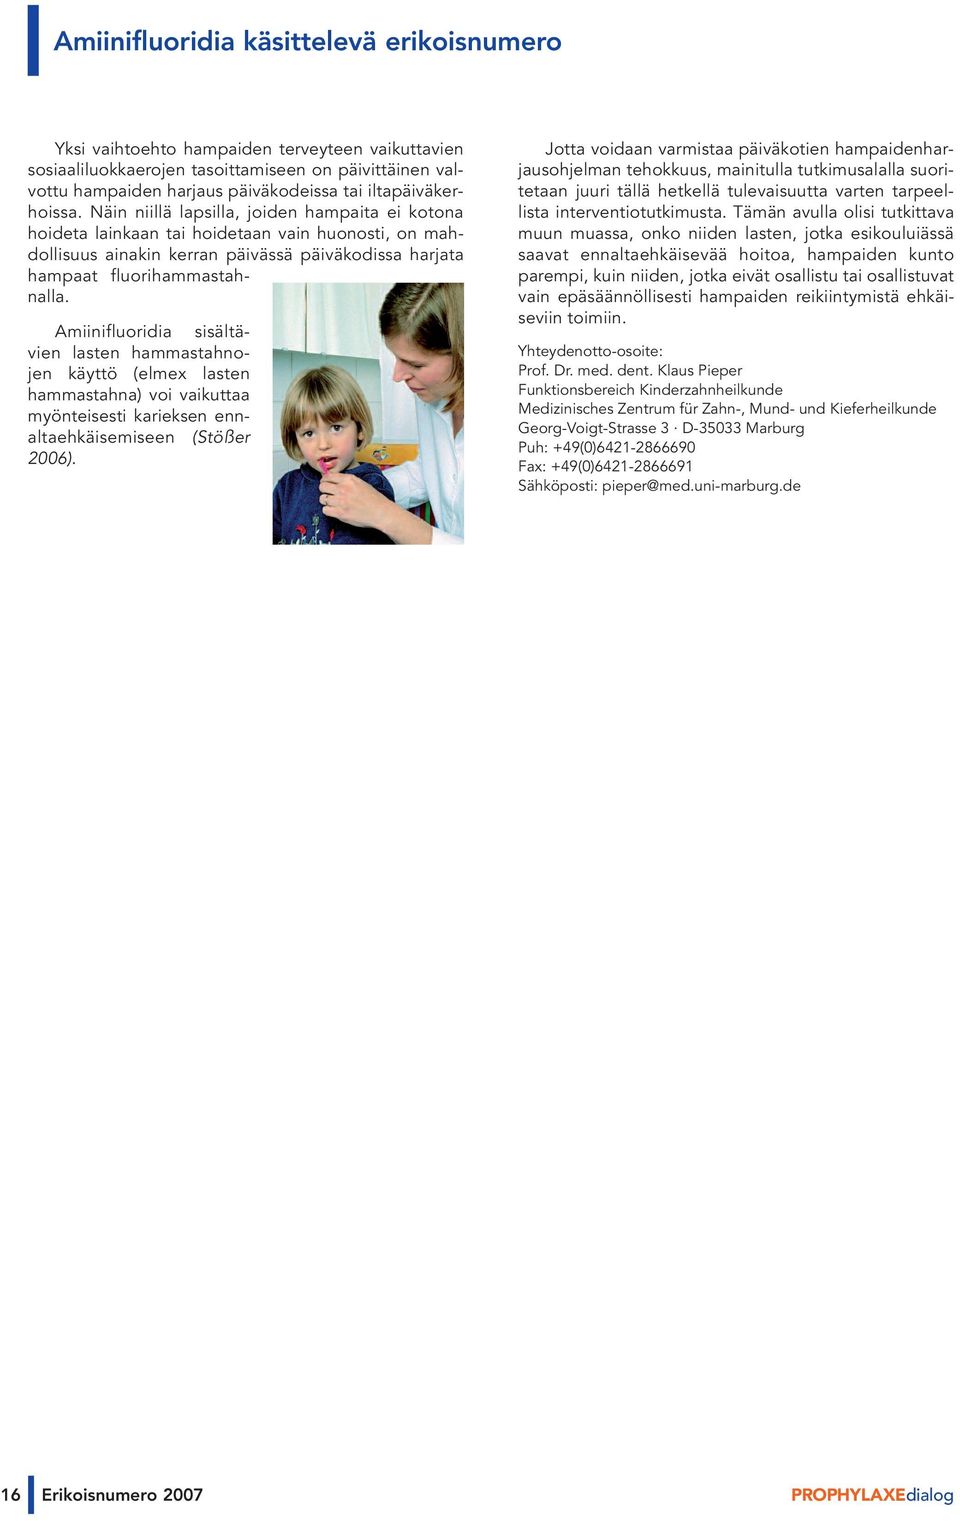 Amiinifluoridia sisältävien lasten hammastahnojen käyttö (elmex lasten hammastahna) voi vaikuttaa myönteisesti karieksen ennaltaehkäisemiseen (Stößer 2006).